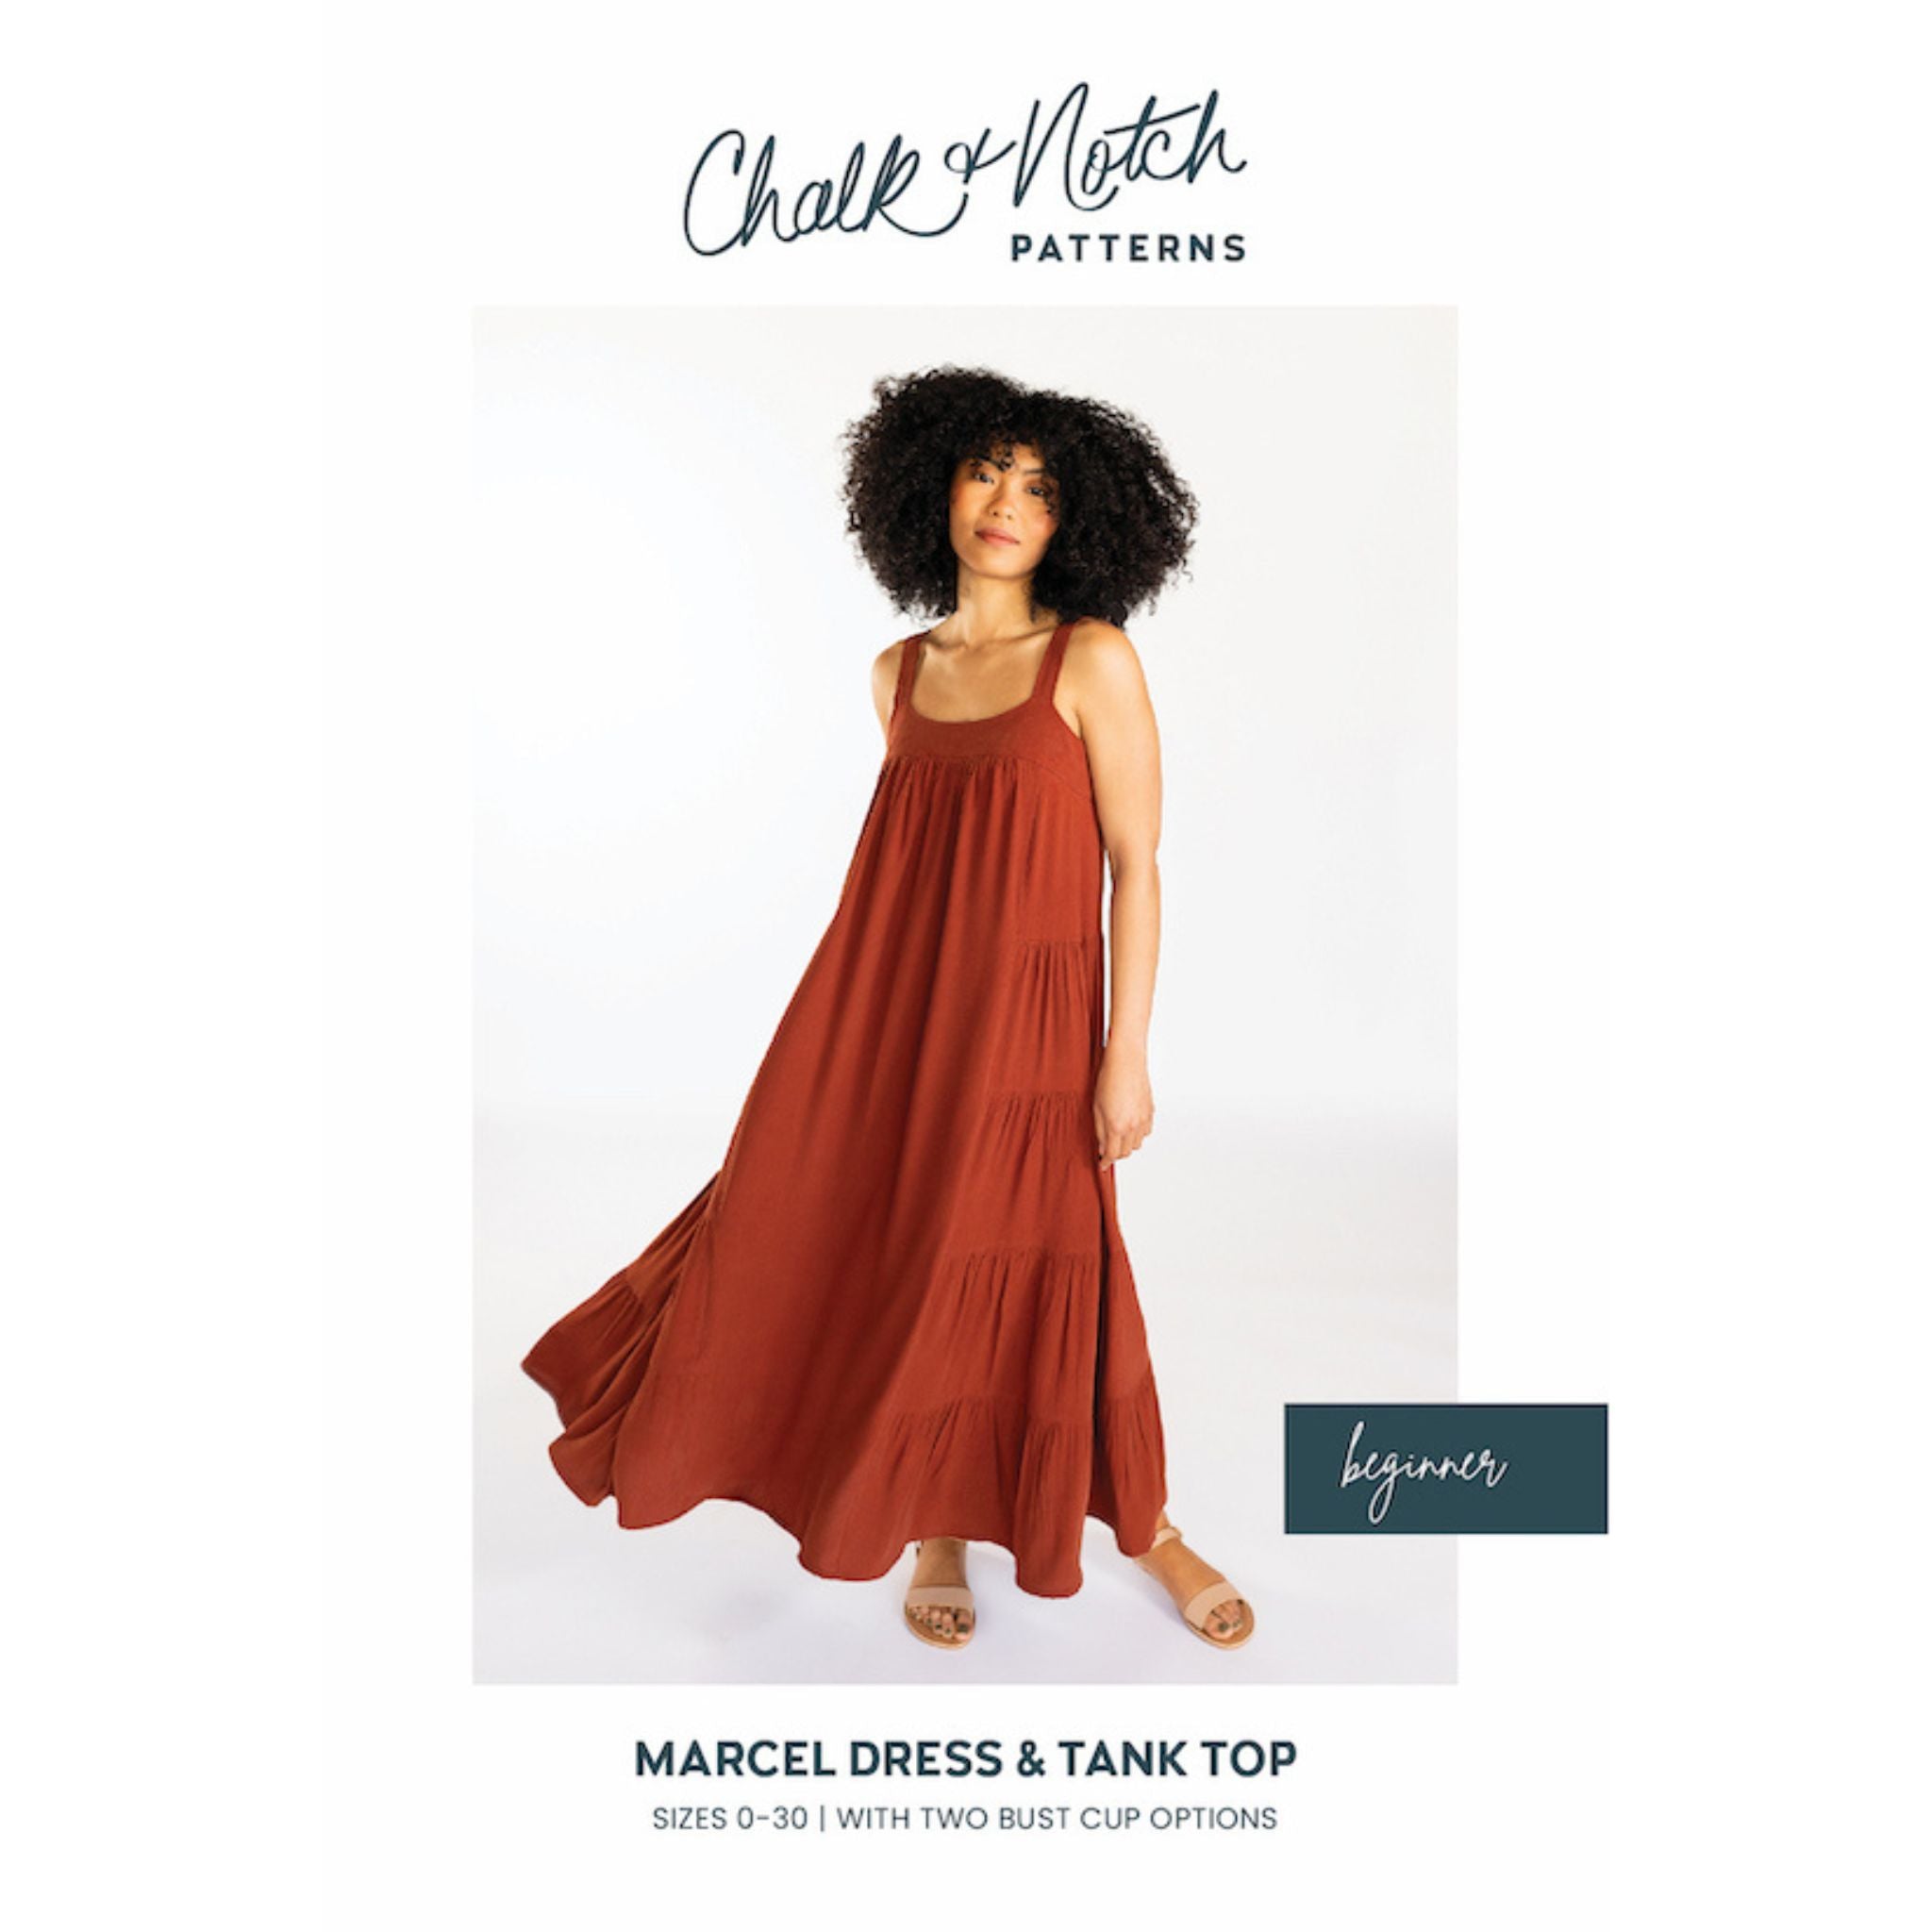 Marcel Dress Pattern - Chalk and Notch